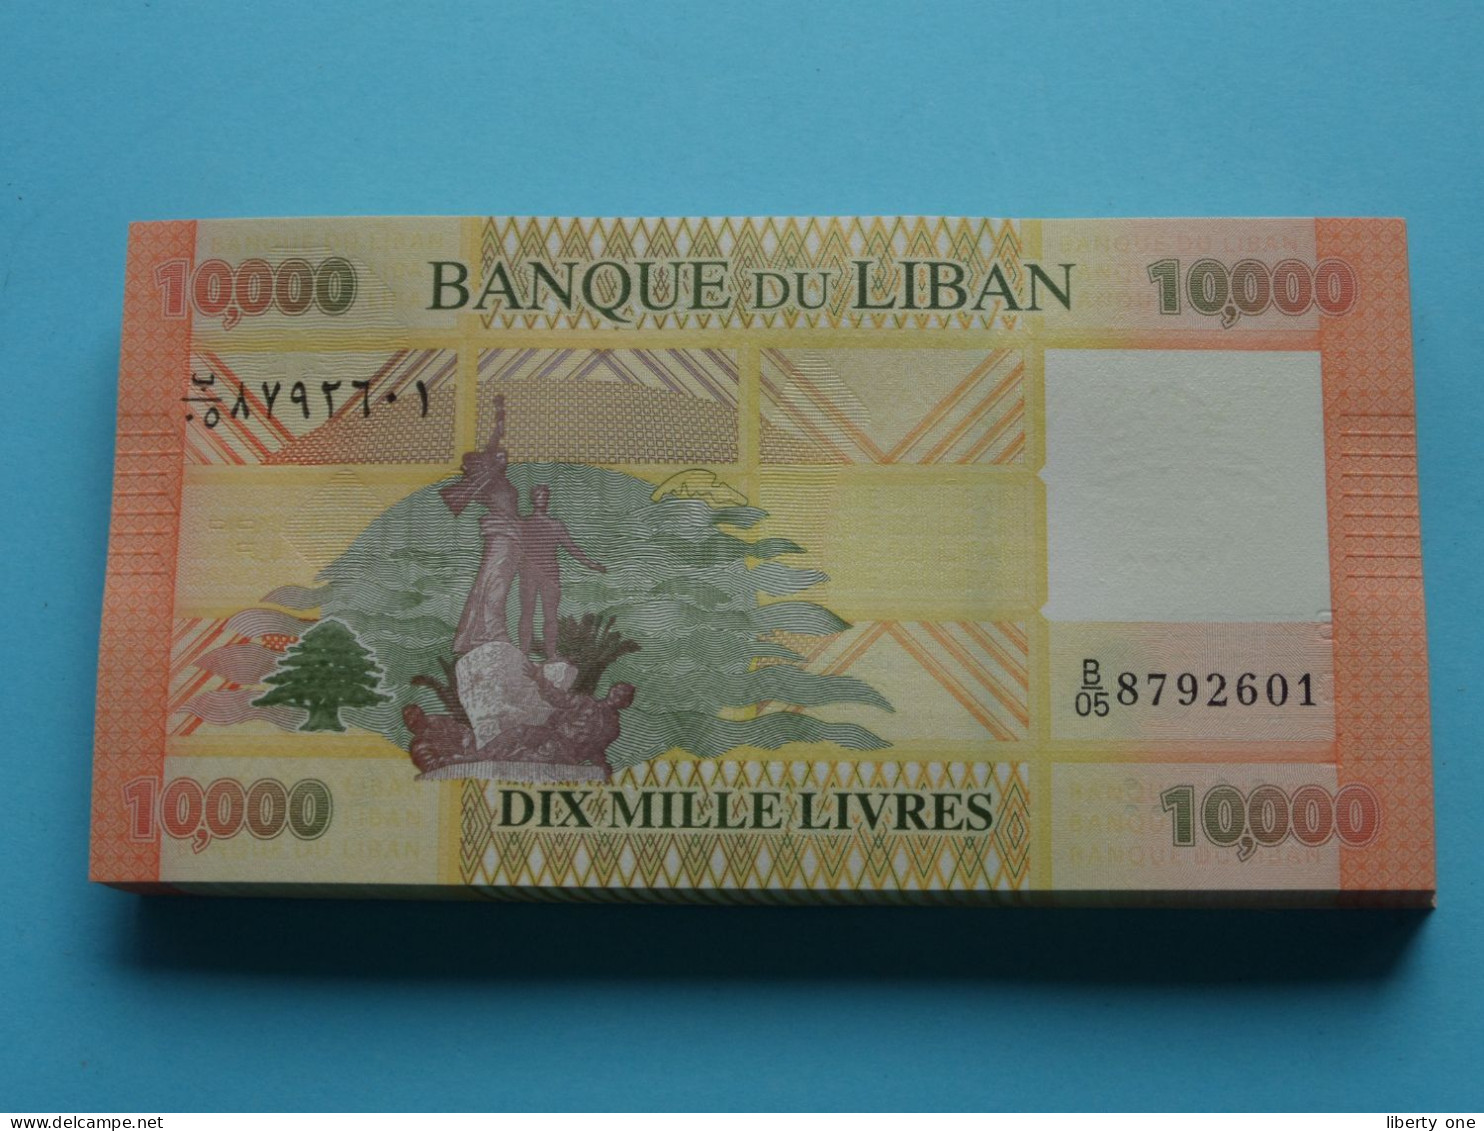 10.000 Dix Mille Livres ( Banque Du Liban ) Lebanon 2014 ( For Grade, Please See SCANS ) UNC ! - Lebanon